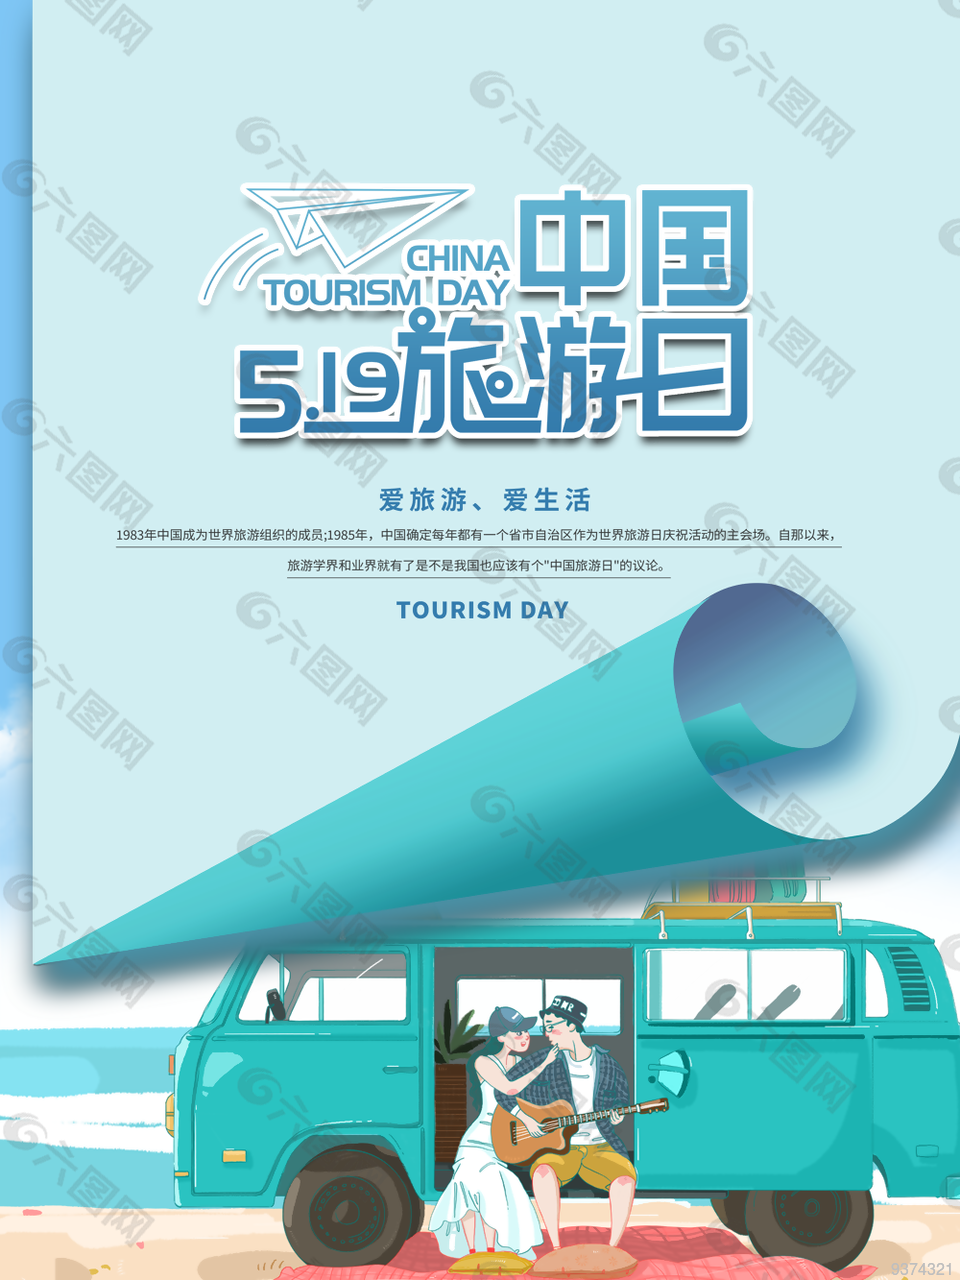 5月19日浪漫中國旅游日海報圖片